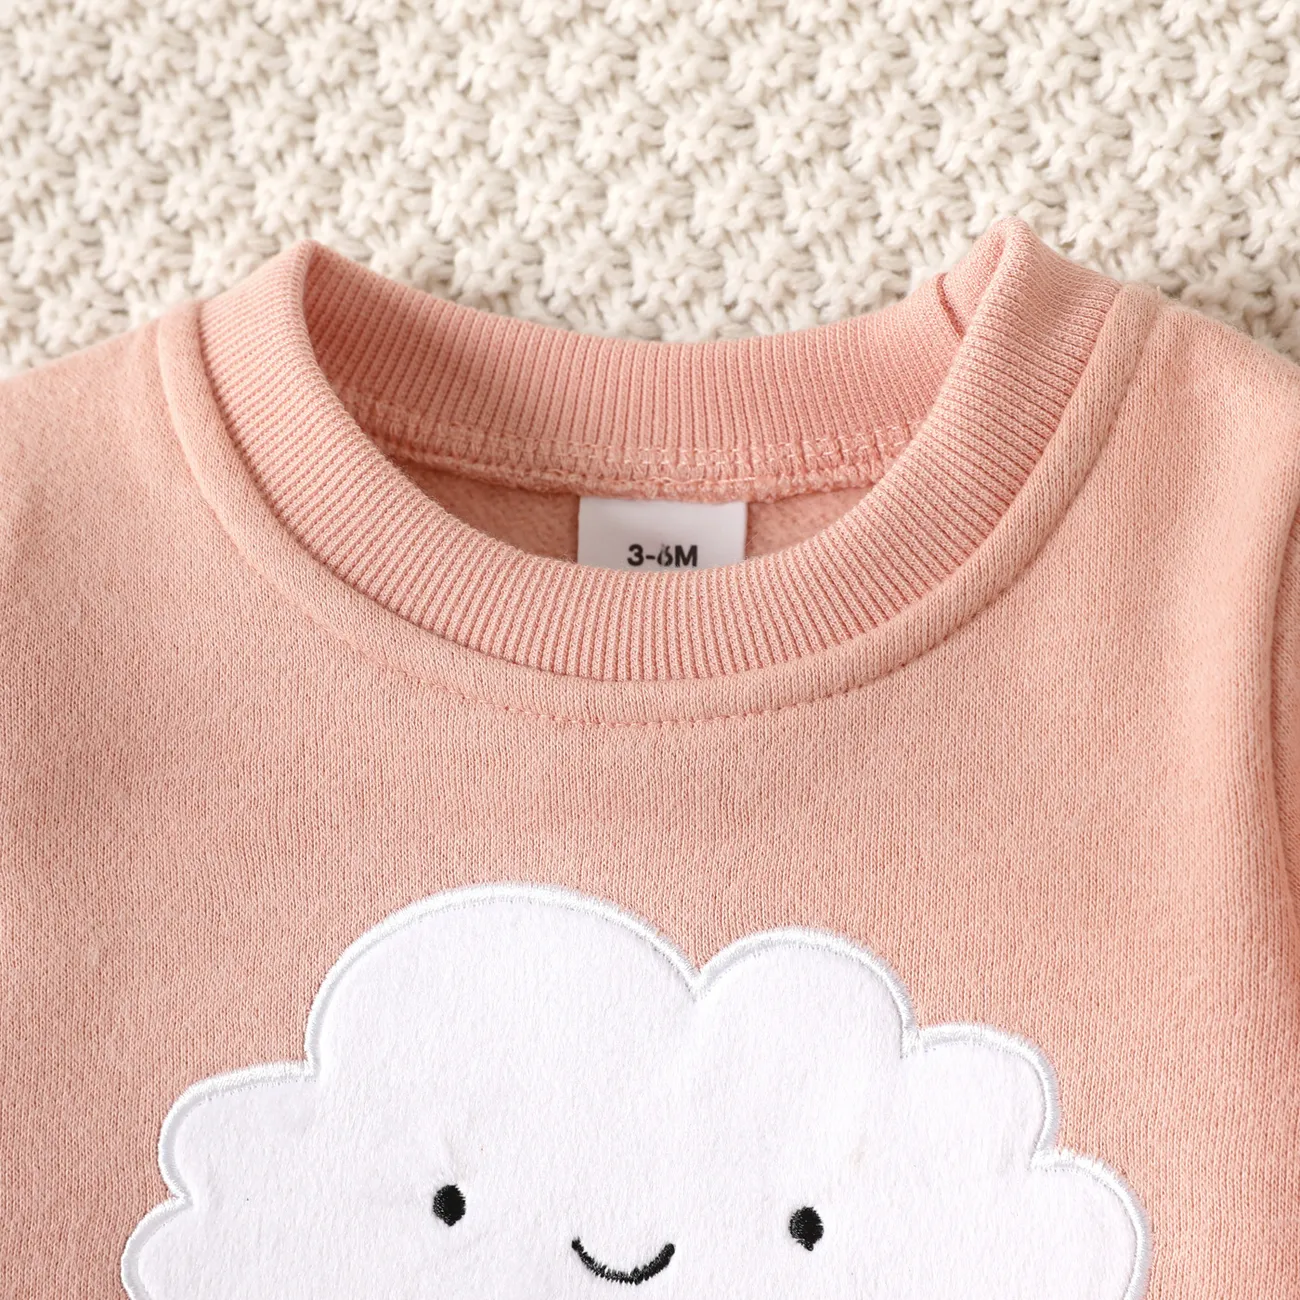 Bébé Unisexe Couture de tissus Enfantin Manches longues Sweat-shirt Rose big image 1